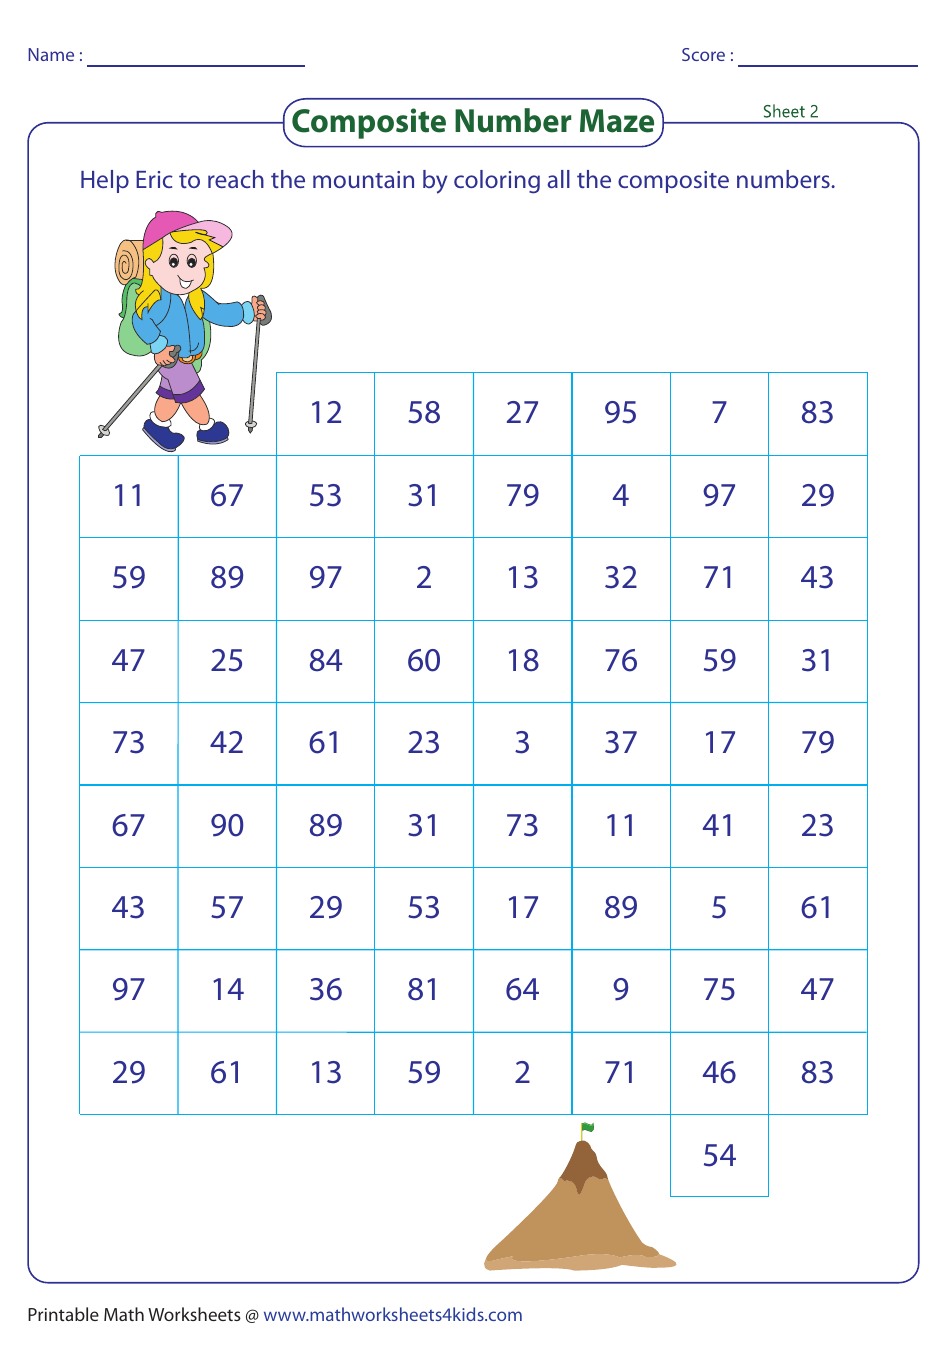 Composite Number Maze Worksheet